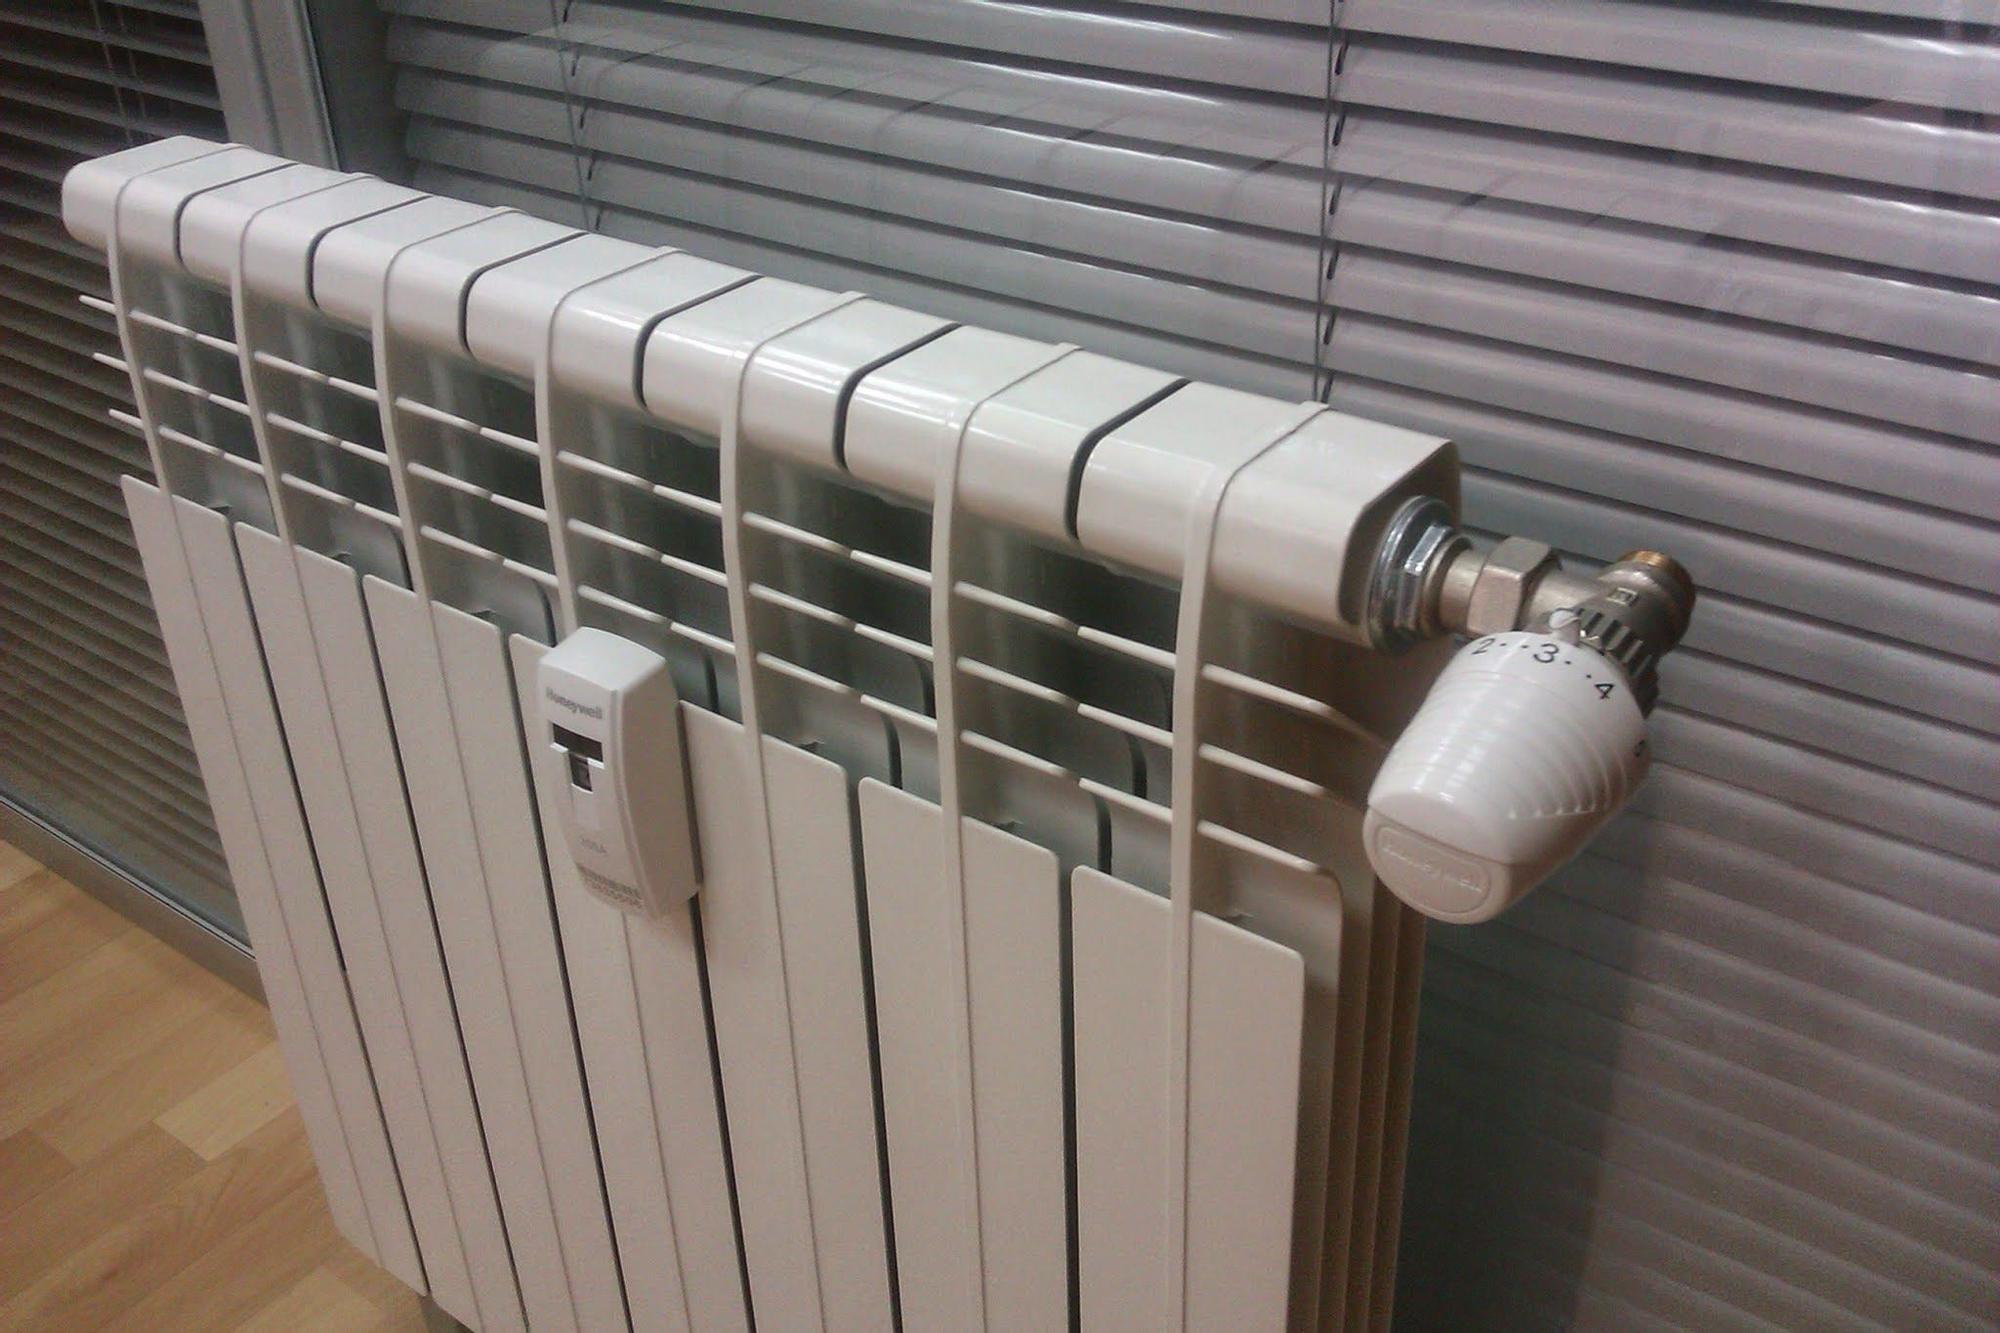 Cómo limpiar los radiadores de tu calefacción?